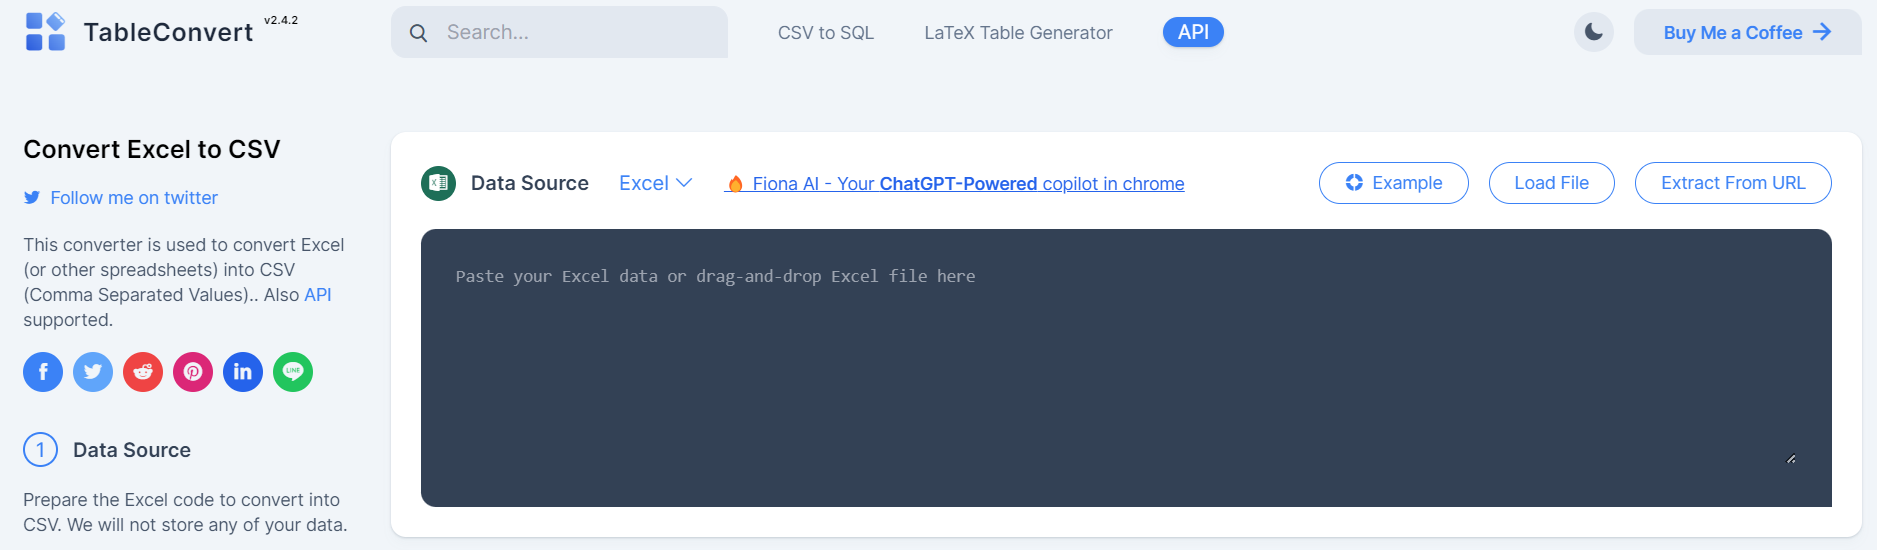 tableConvert Convert Excel to CSV